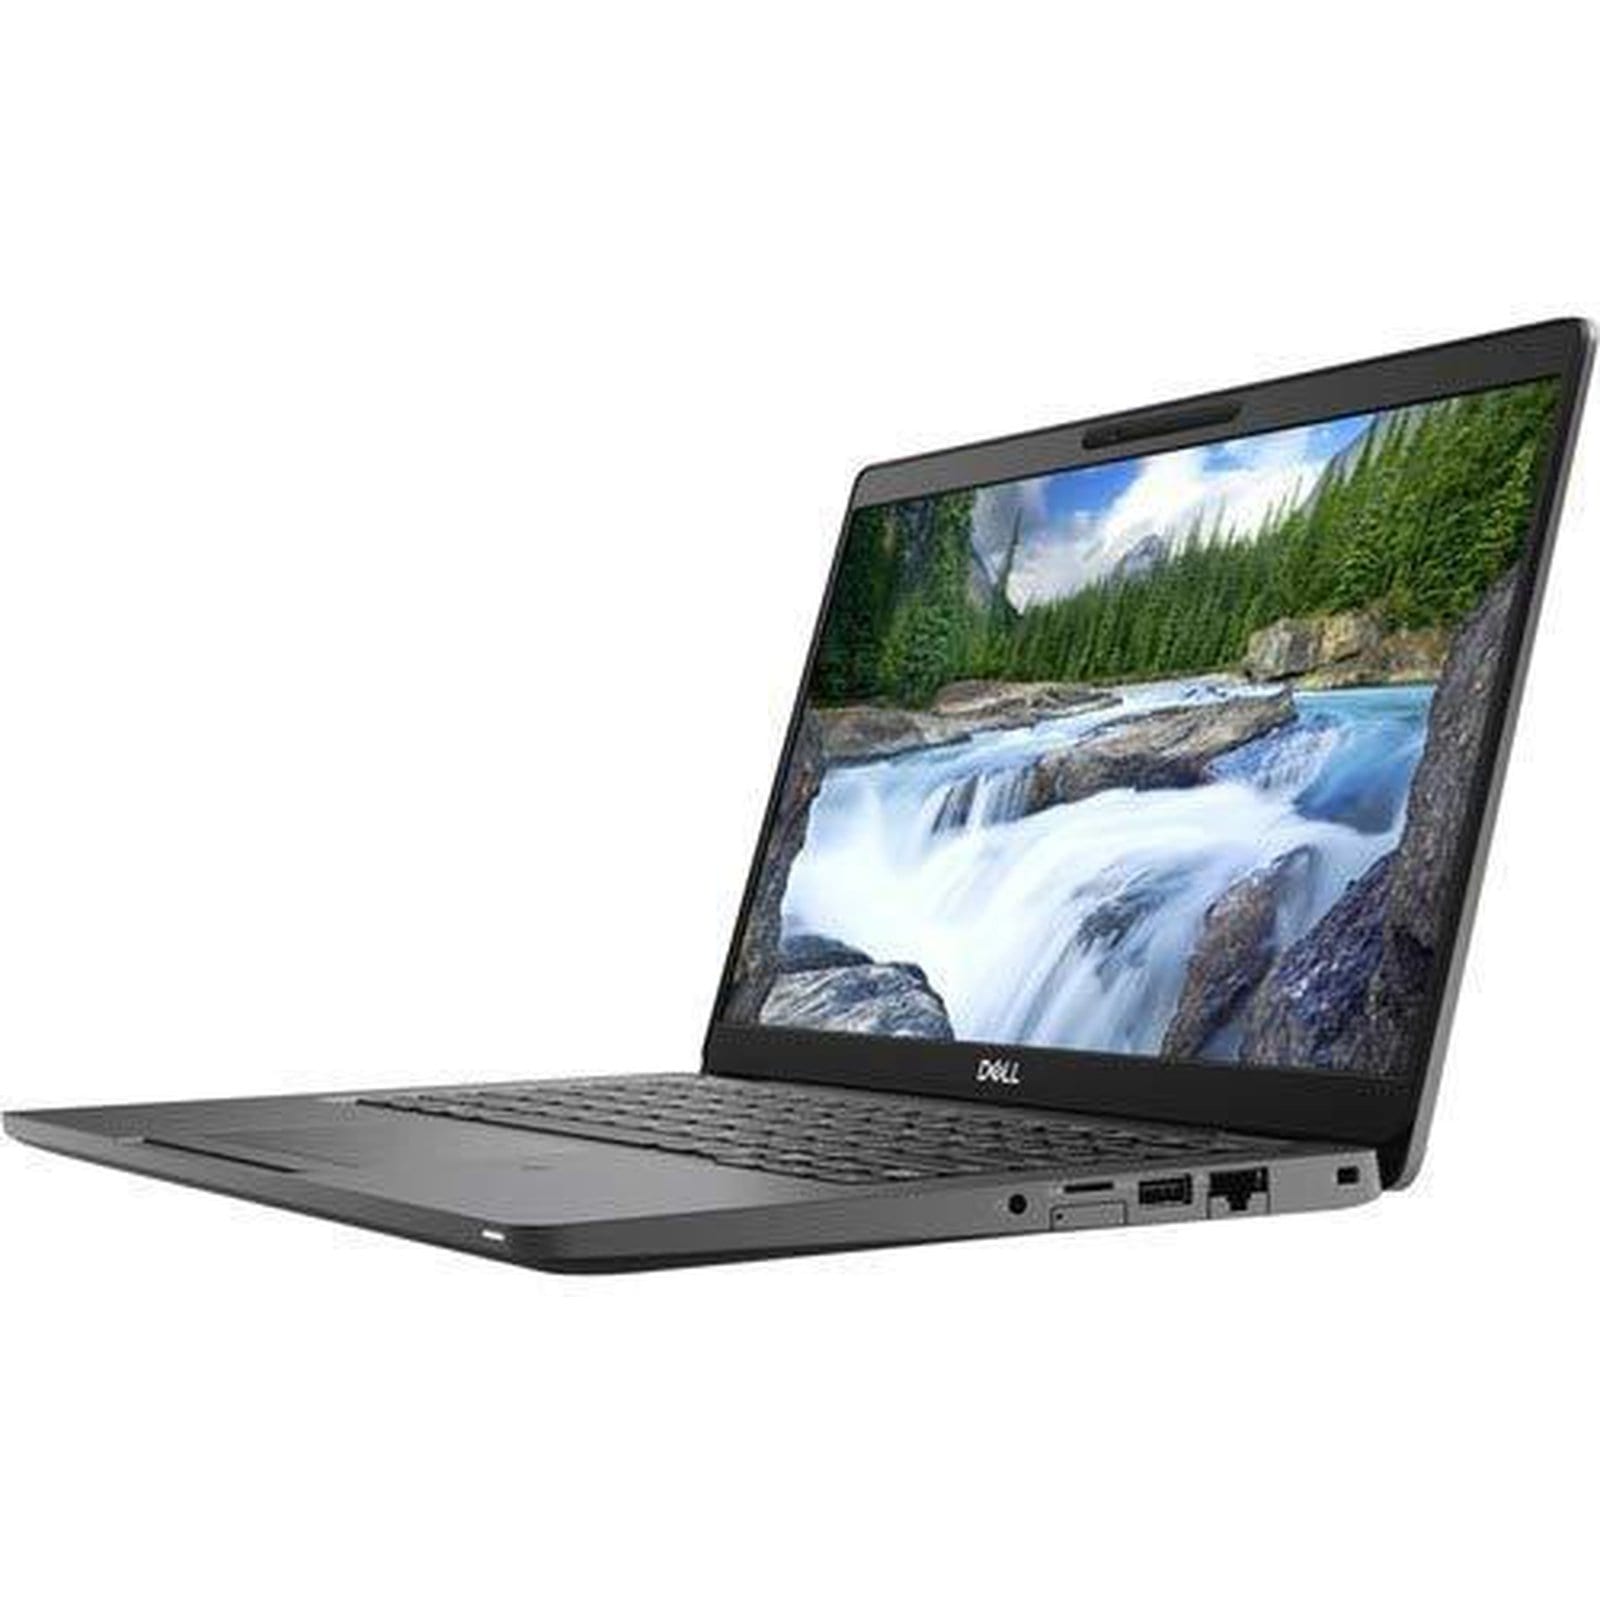 BSB-VWVEJ1XJ7JWU3L6C-REF-REF-LAP-DL 2019 Dell Latitude 5300 Laptop 13.3" - i5 - i5-8265U - Quad Core 3.9Ghz - 256GB SSD - 16GB RAM - 1920x1080 FHD Touchscreen - Windows 10 Pro Black